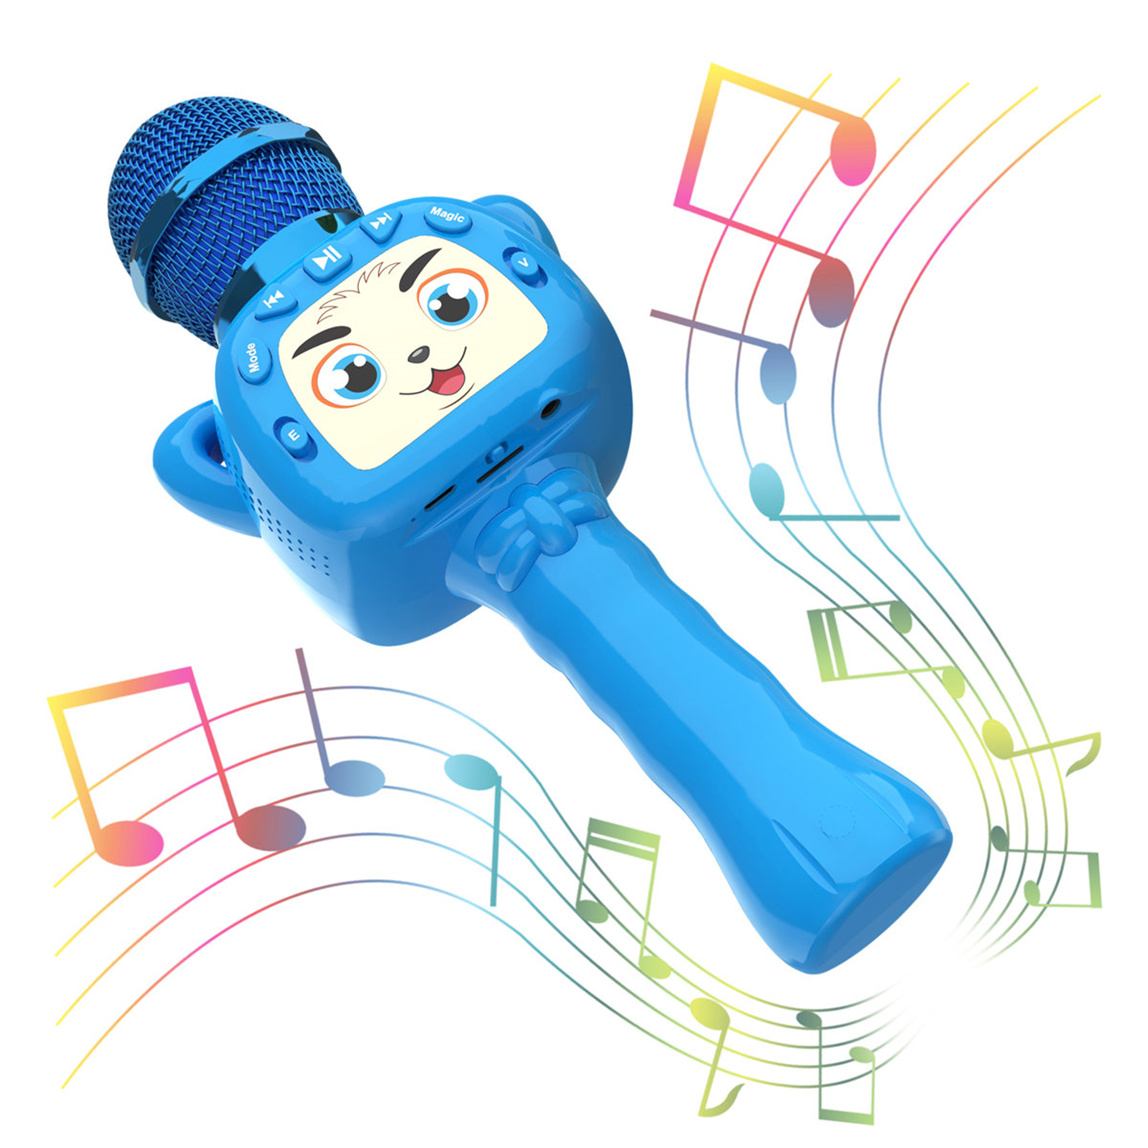 Proveedores de China del micrófono congelado del Karaoke de Disney